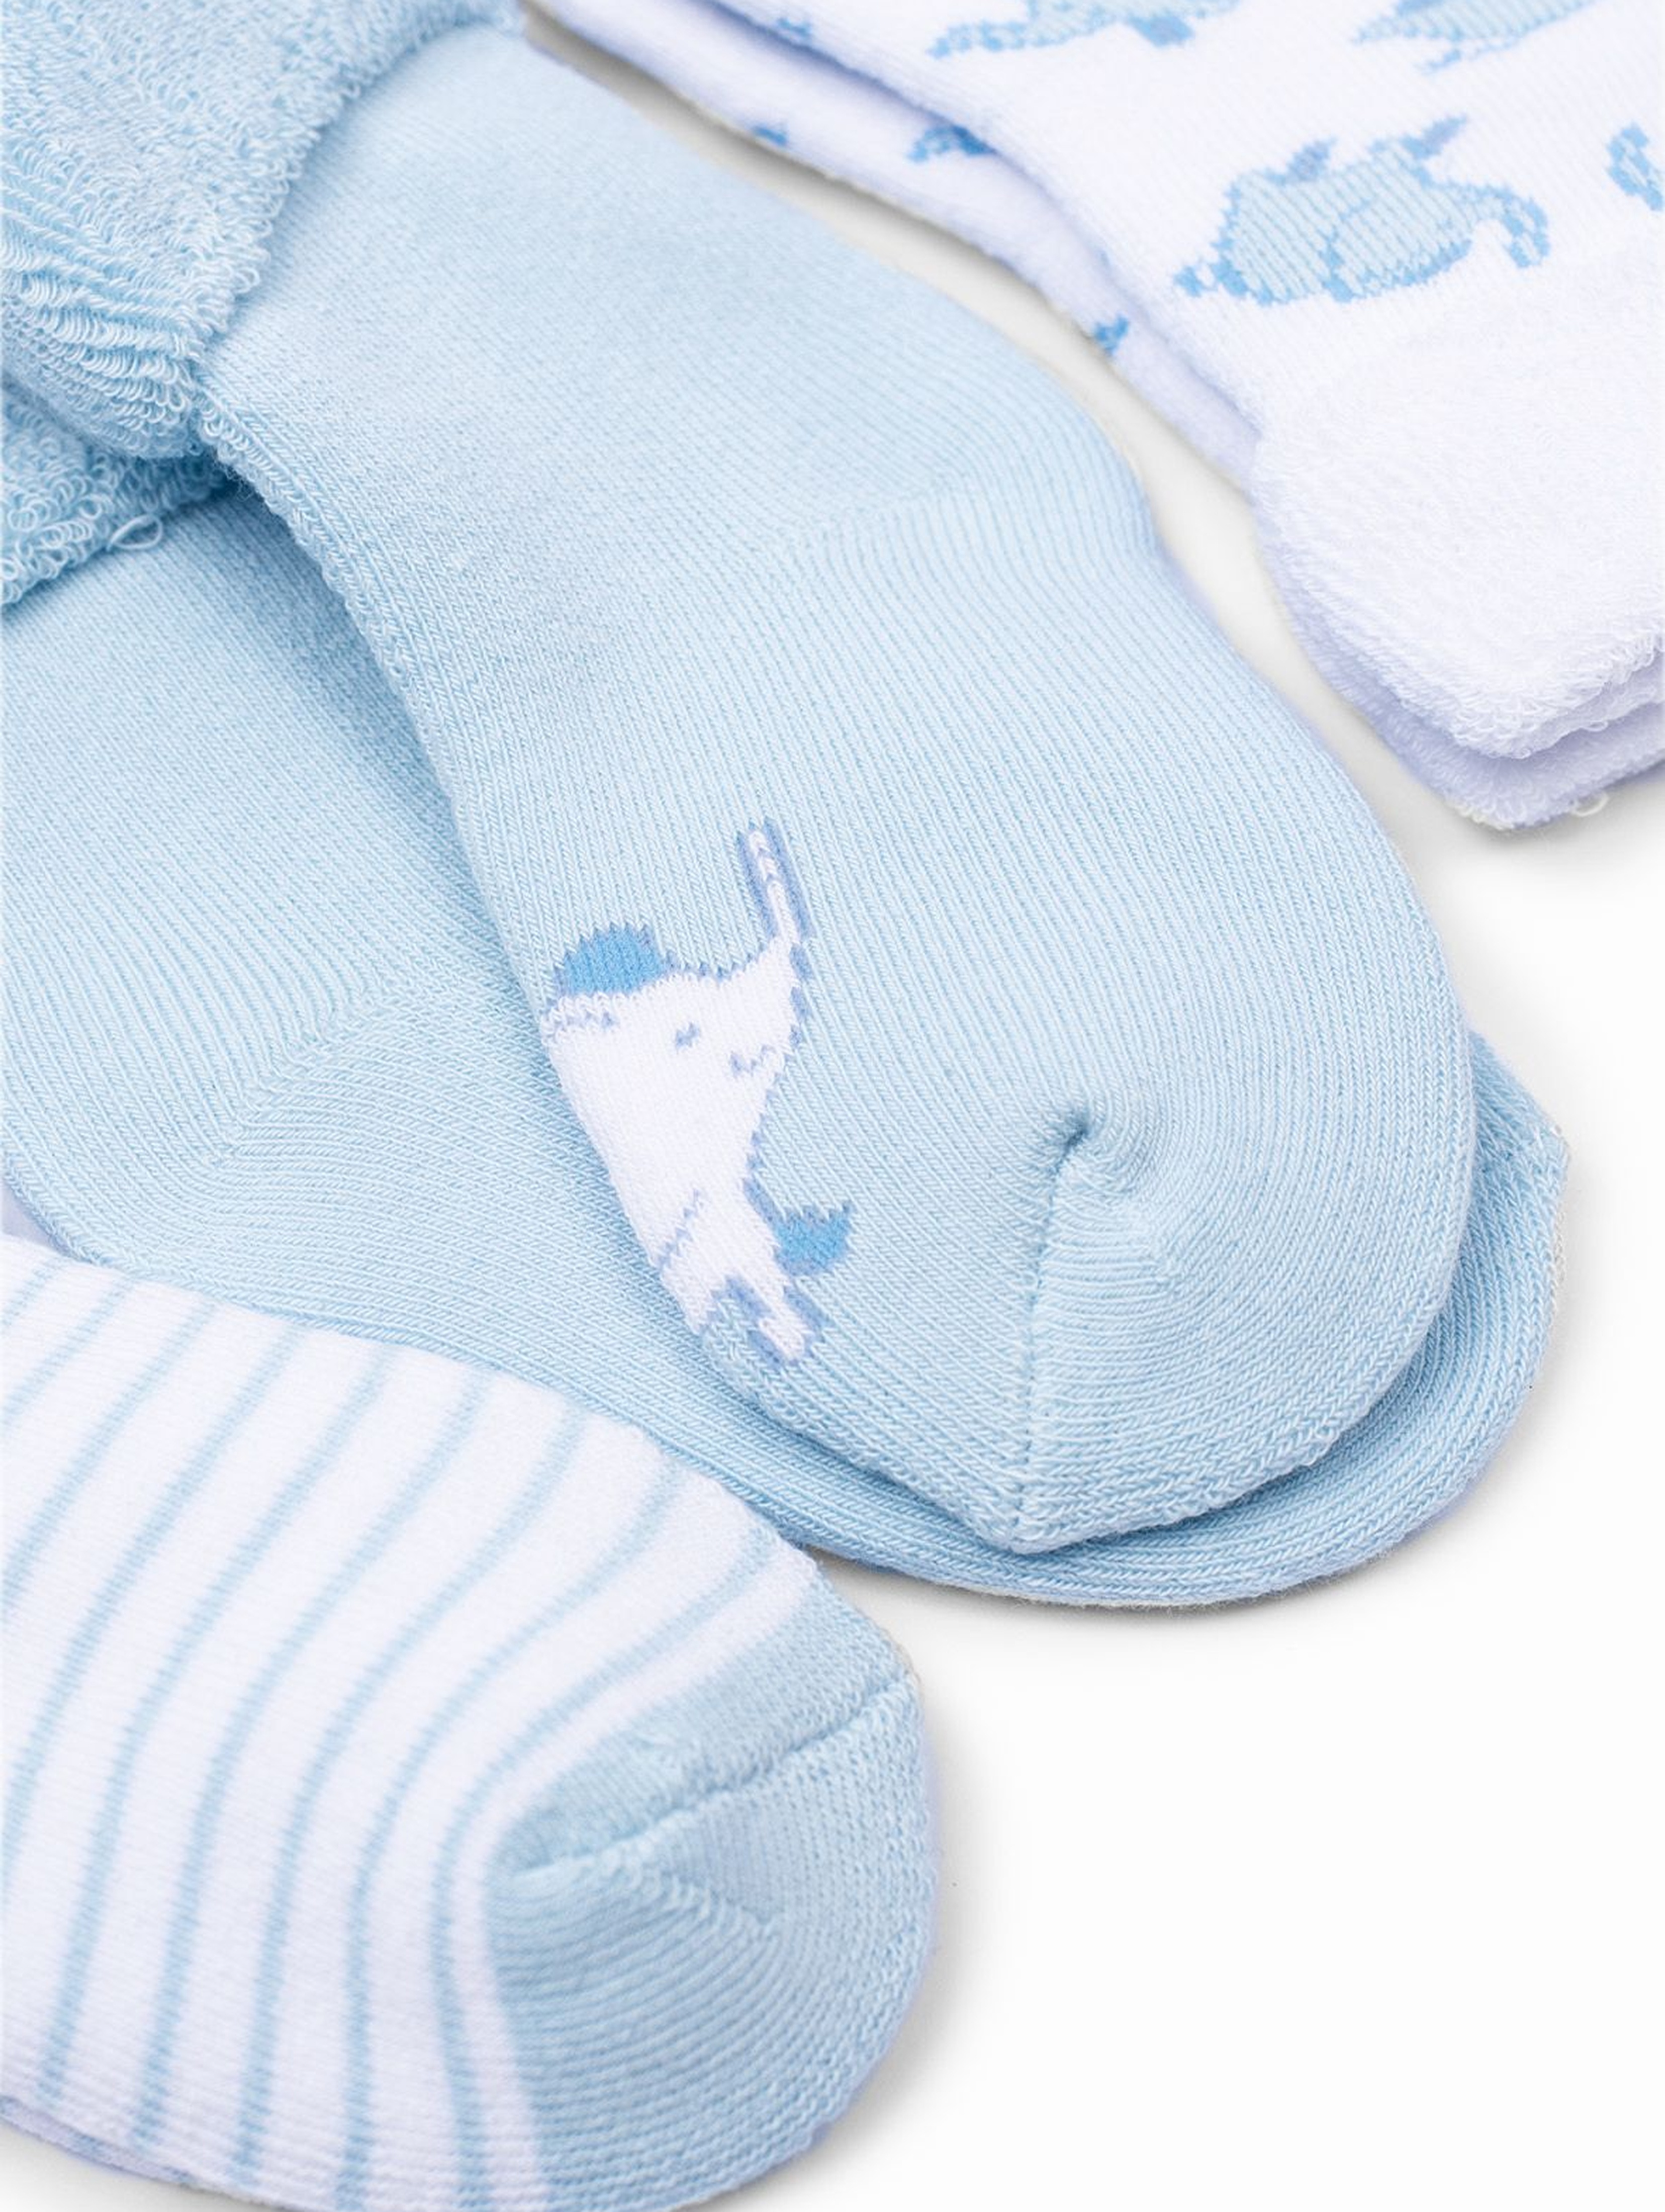 Skarpetki niemowlęce fotte w niebieskie słoniki - 3pak